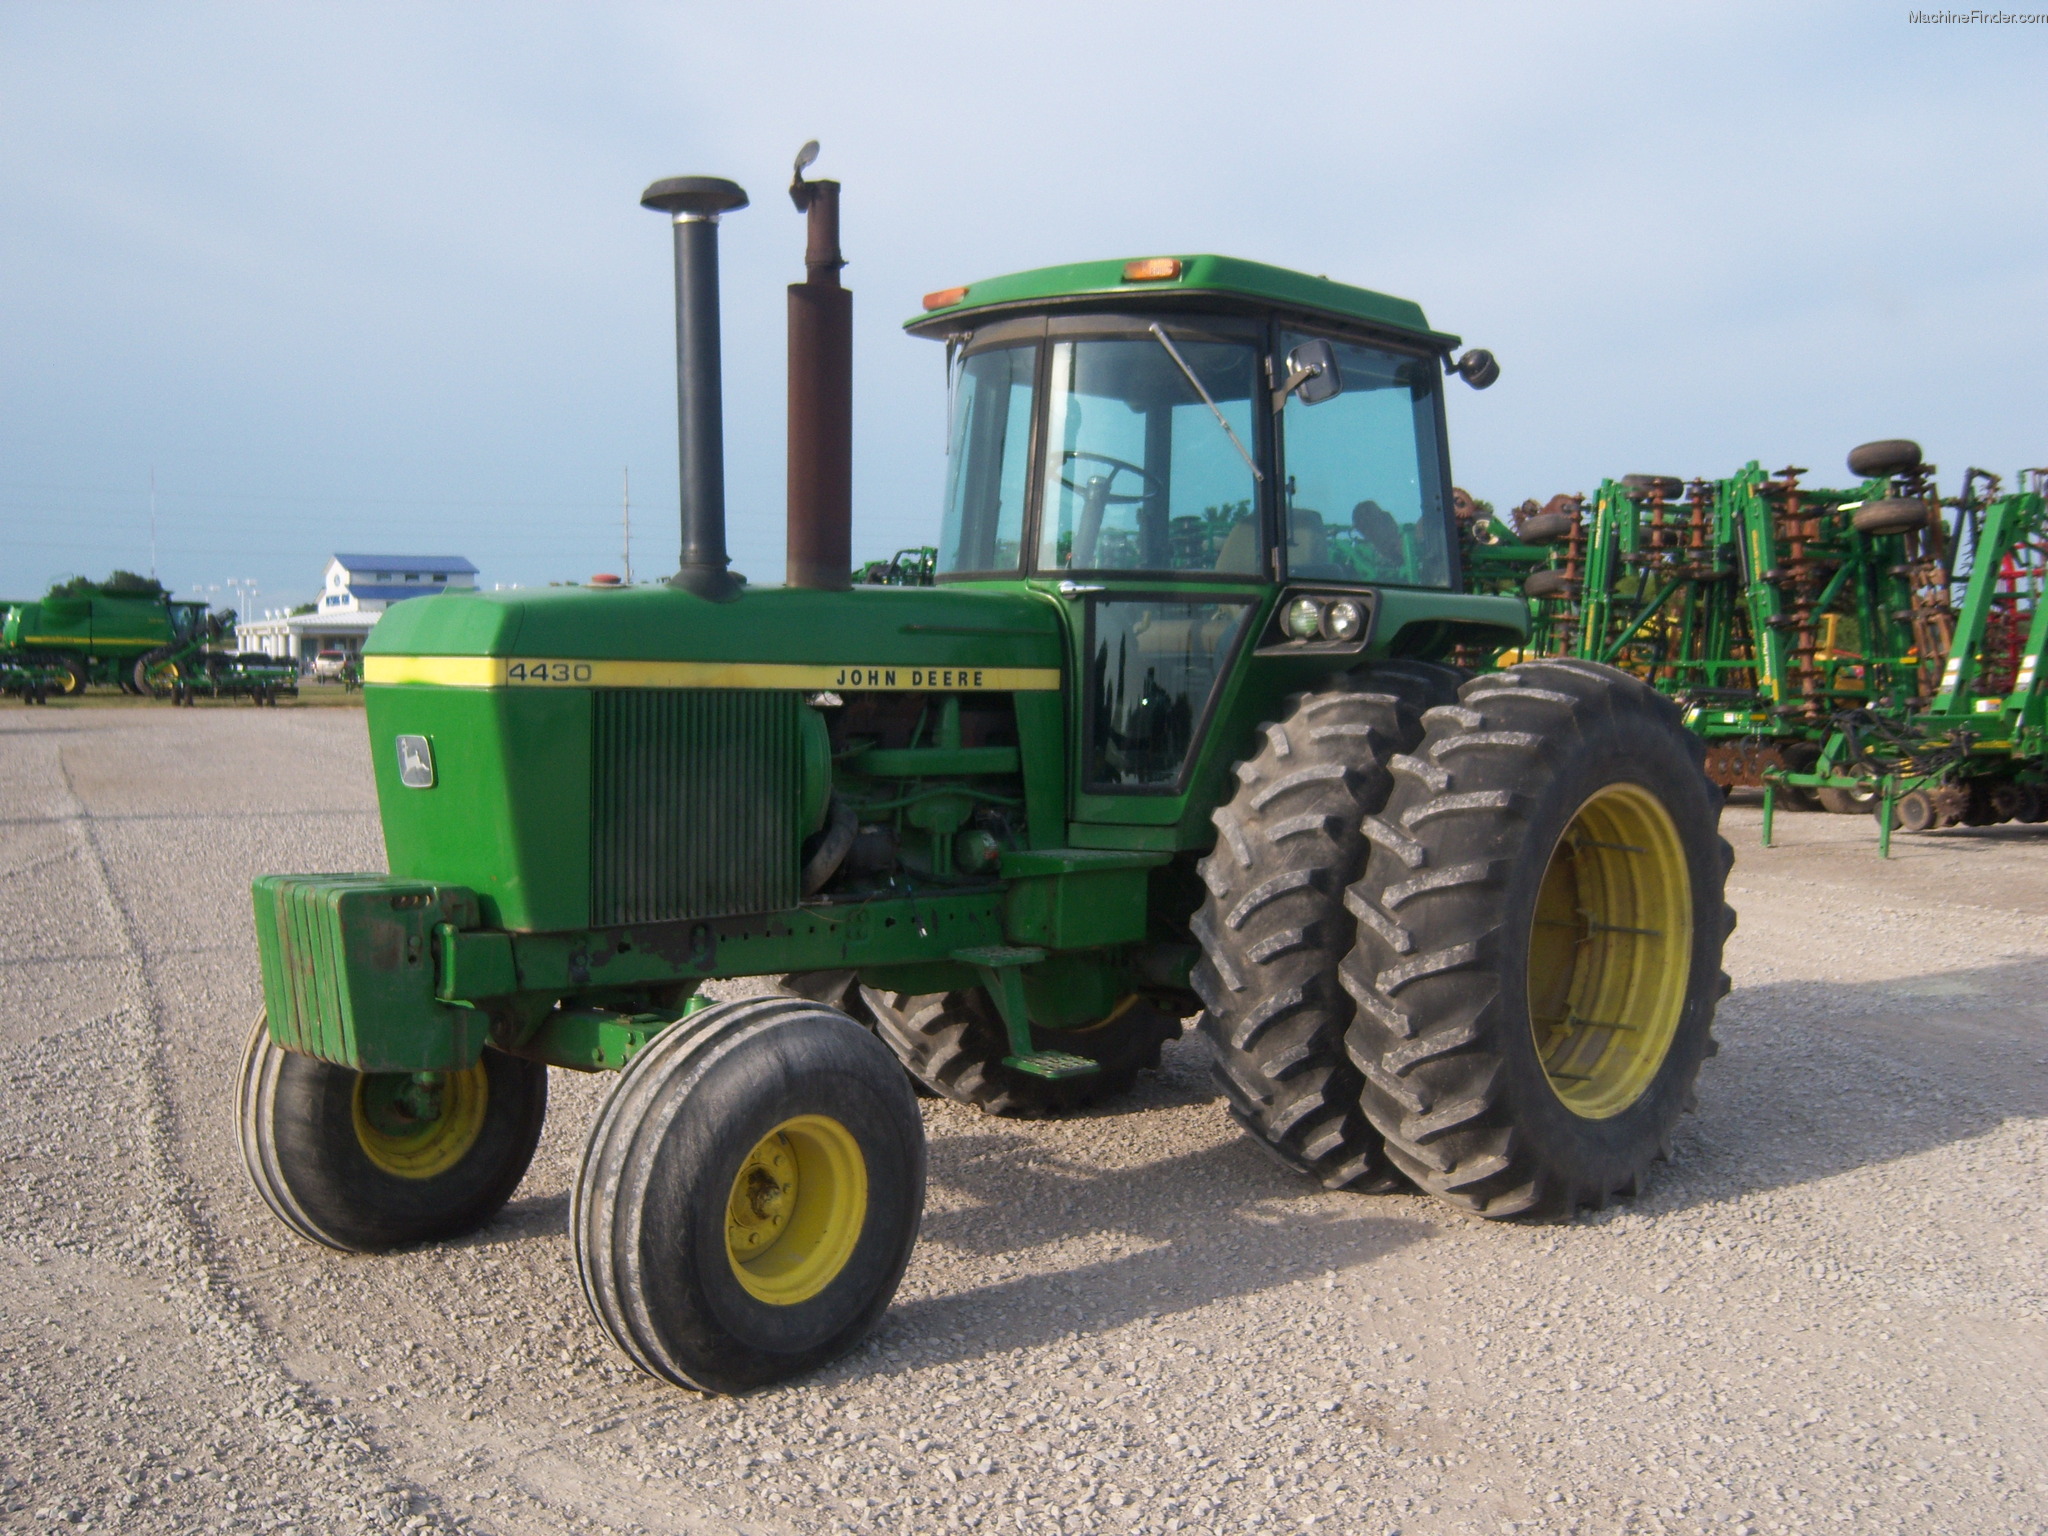 1977 John Deere 4430 Tractors - Row Crop (+100hp) - John Deere ...